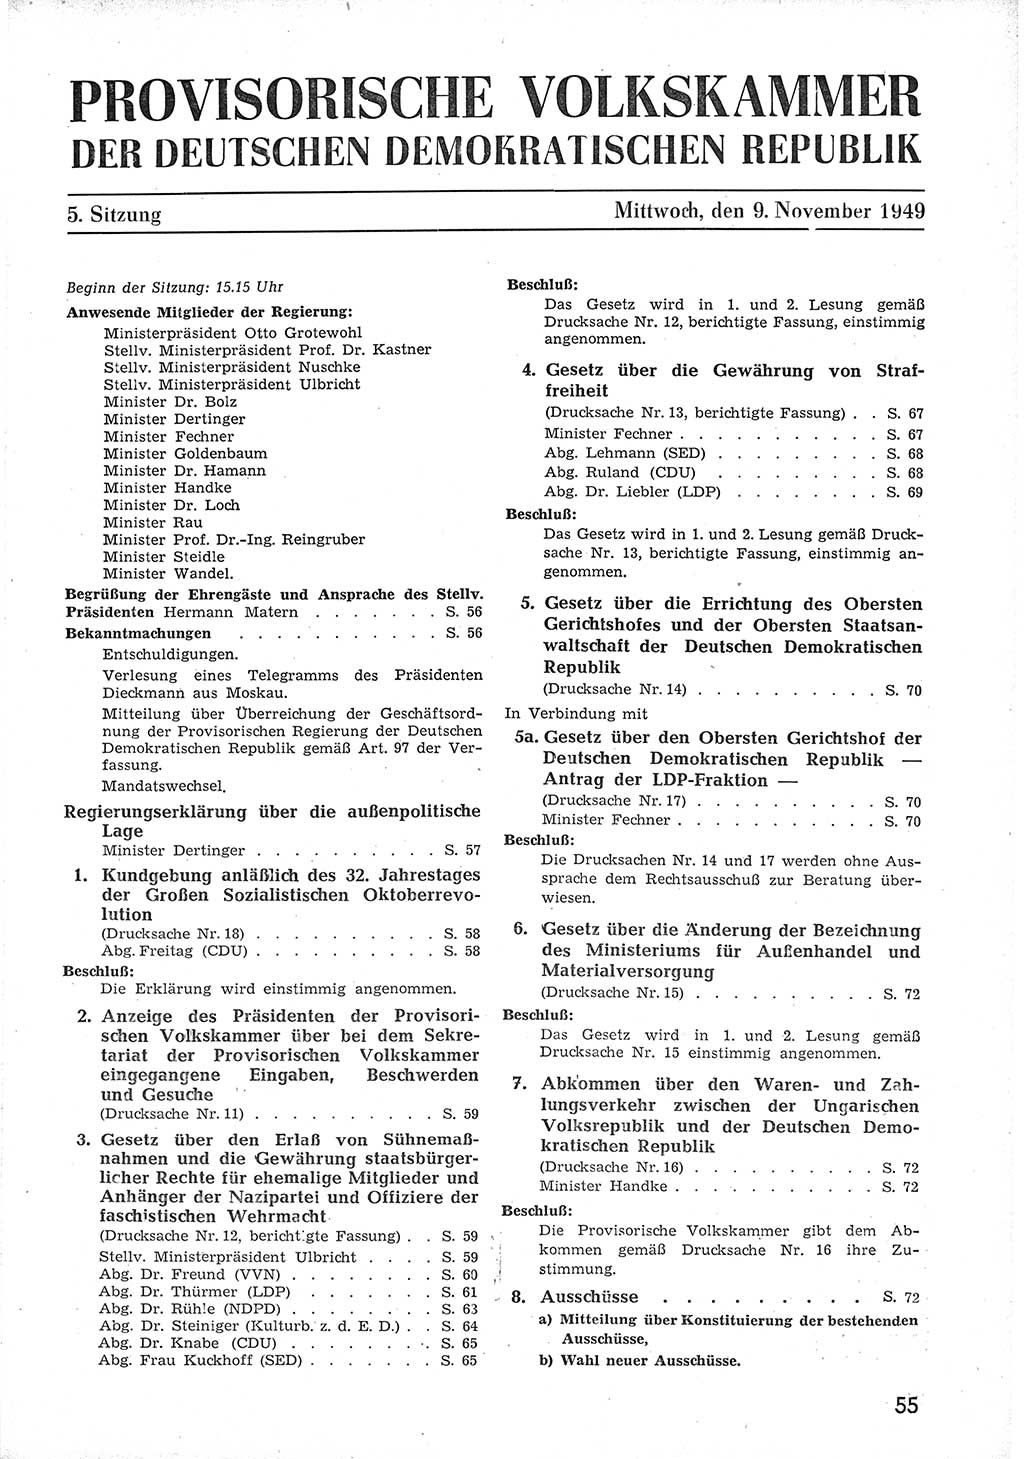 Provisorische Volkskammer (VK) der Deutschen Demokratischen Republik (DDR) 1949-1950, Dokument 67 (Prov. VK DDR 1949-1950, Dok. 67)